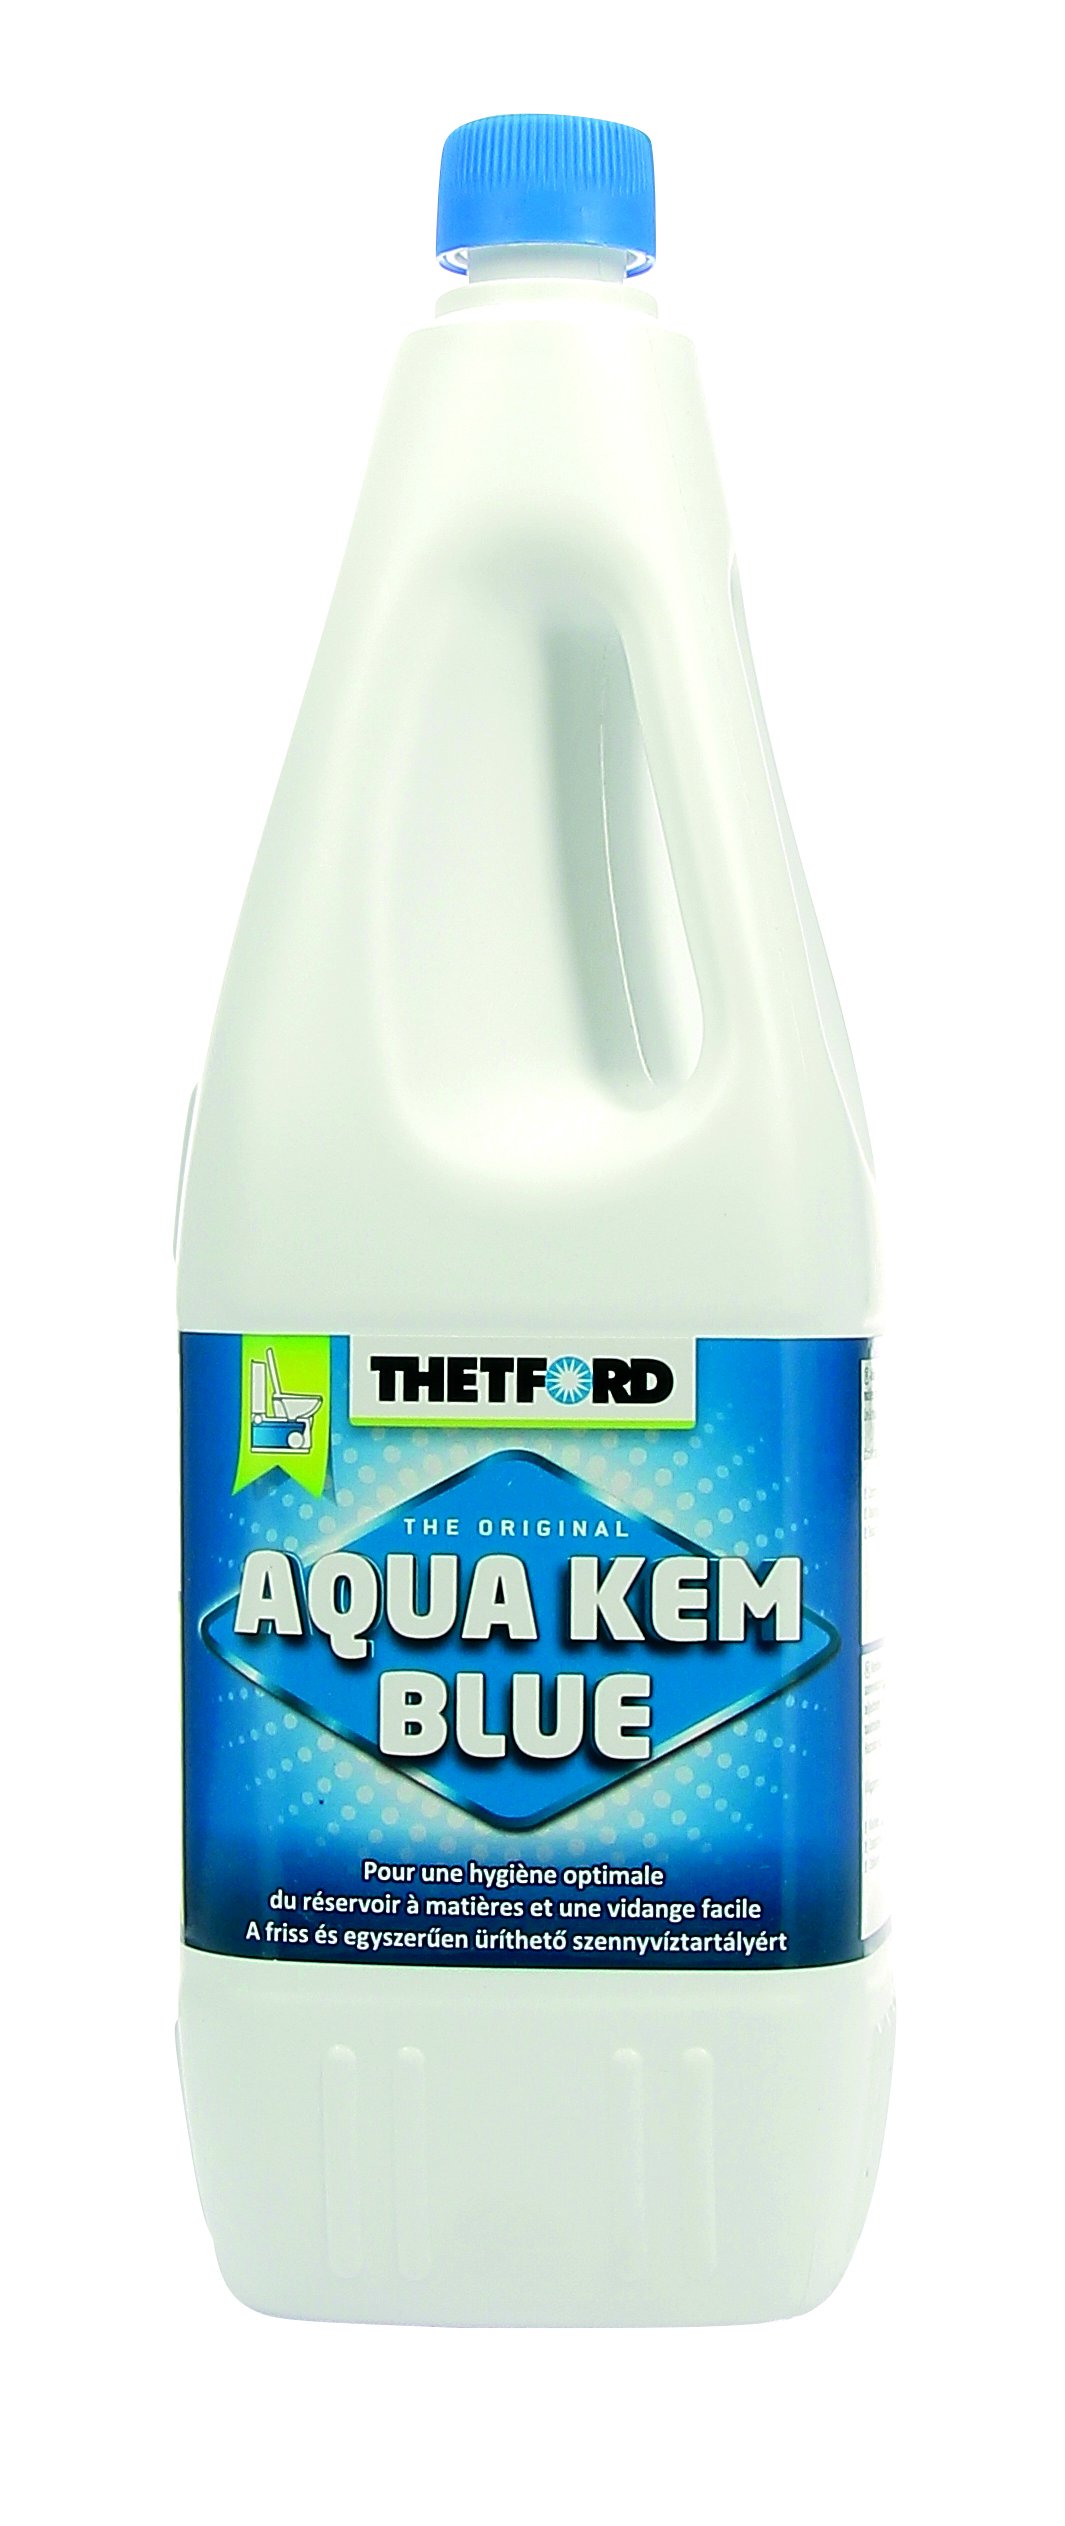 Thetford 500514 Aqua Kem Blue Novelle Formel Reiniger von Thetford